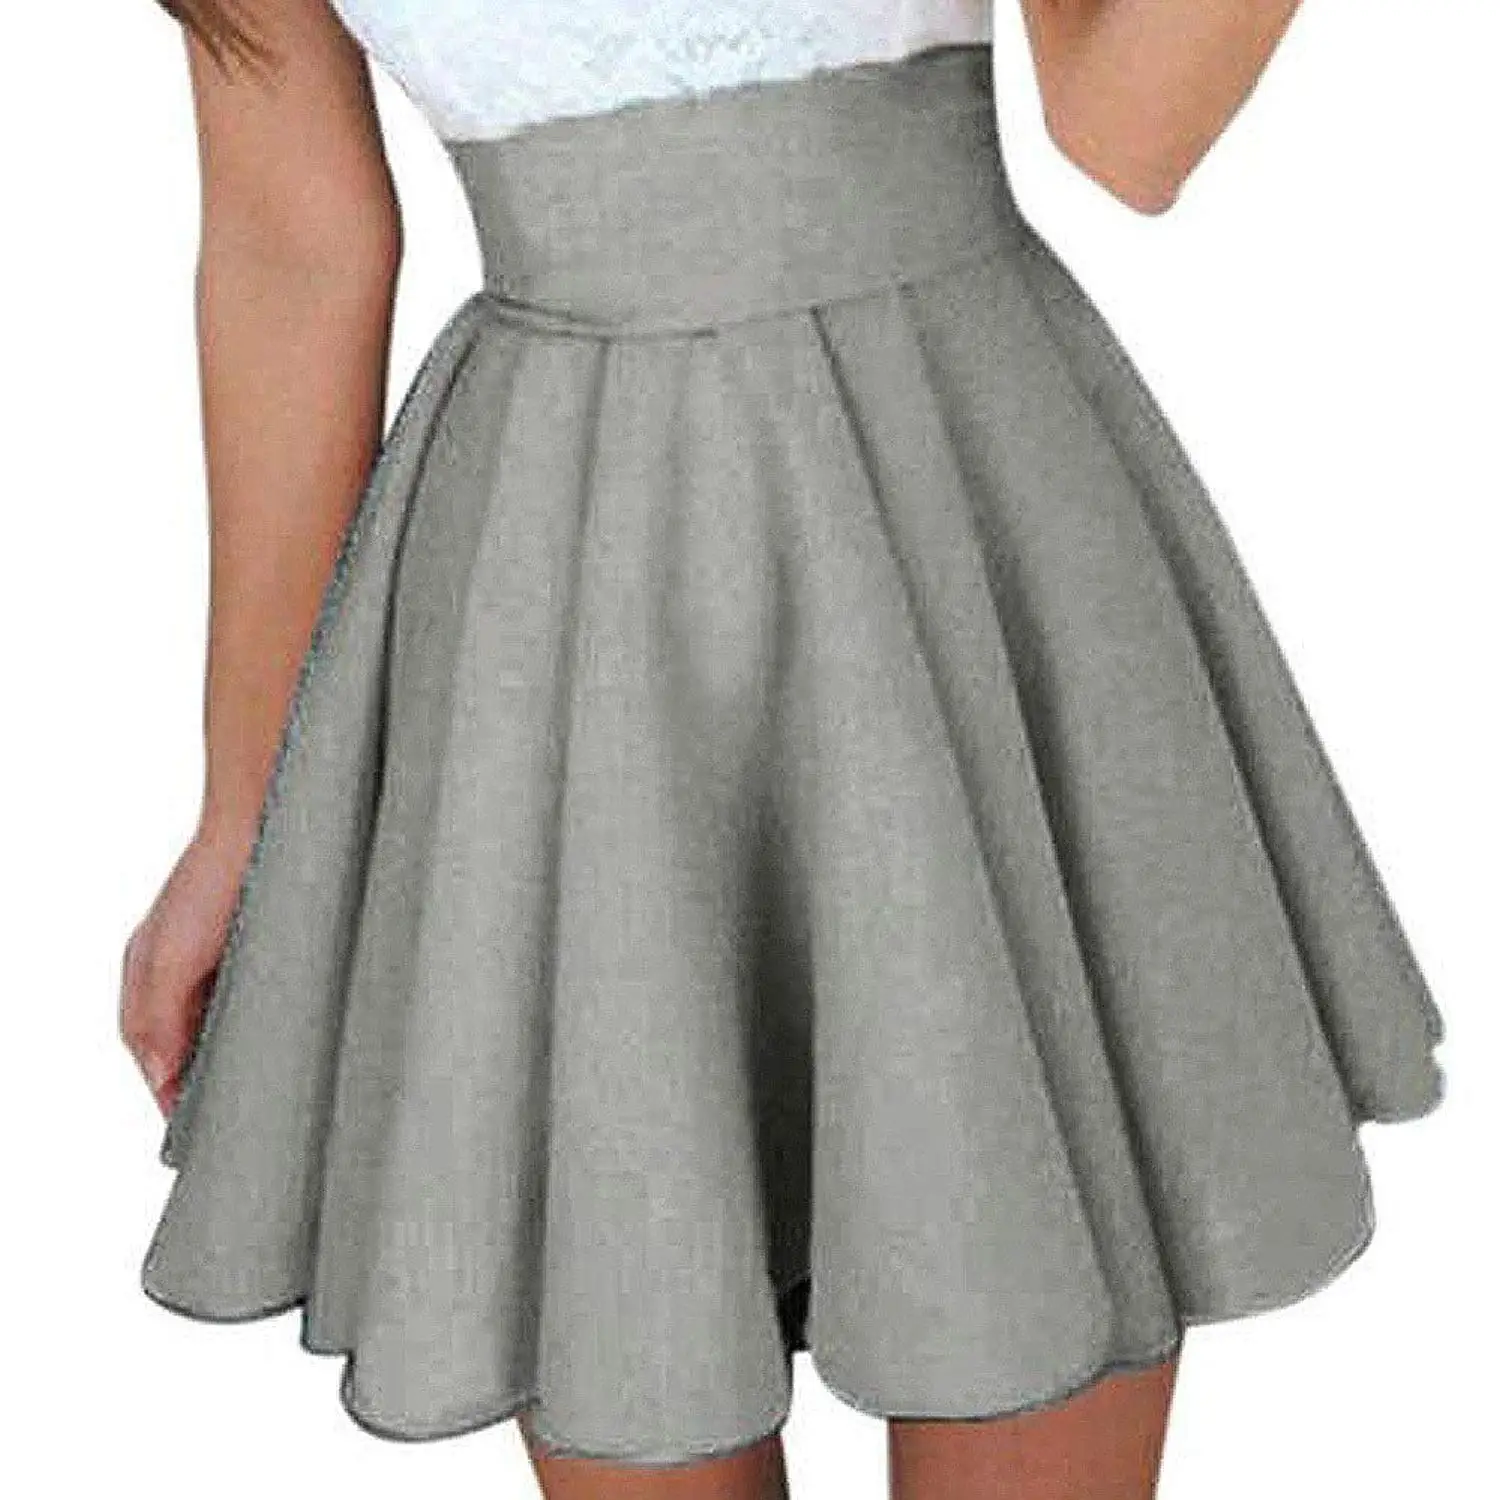 Cheap Chevron Skirt For Women, find Chevron Skirt For Women deals on ...